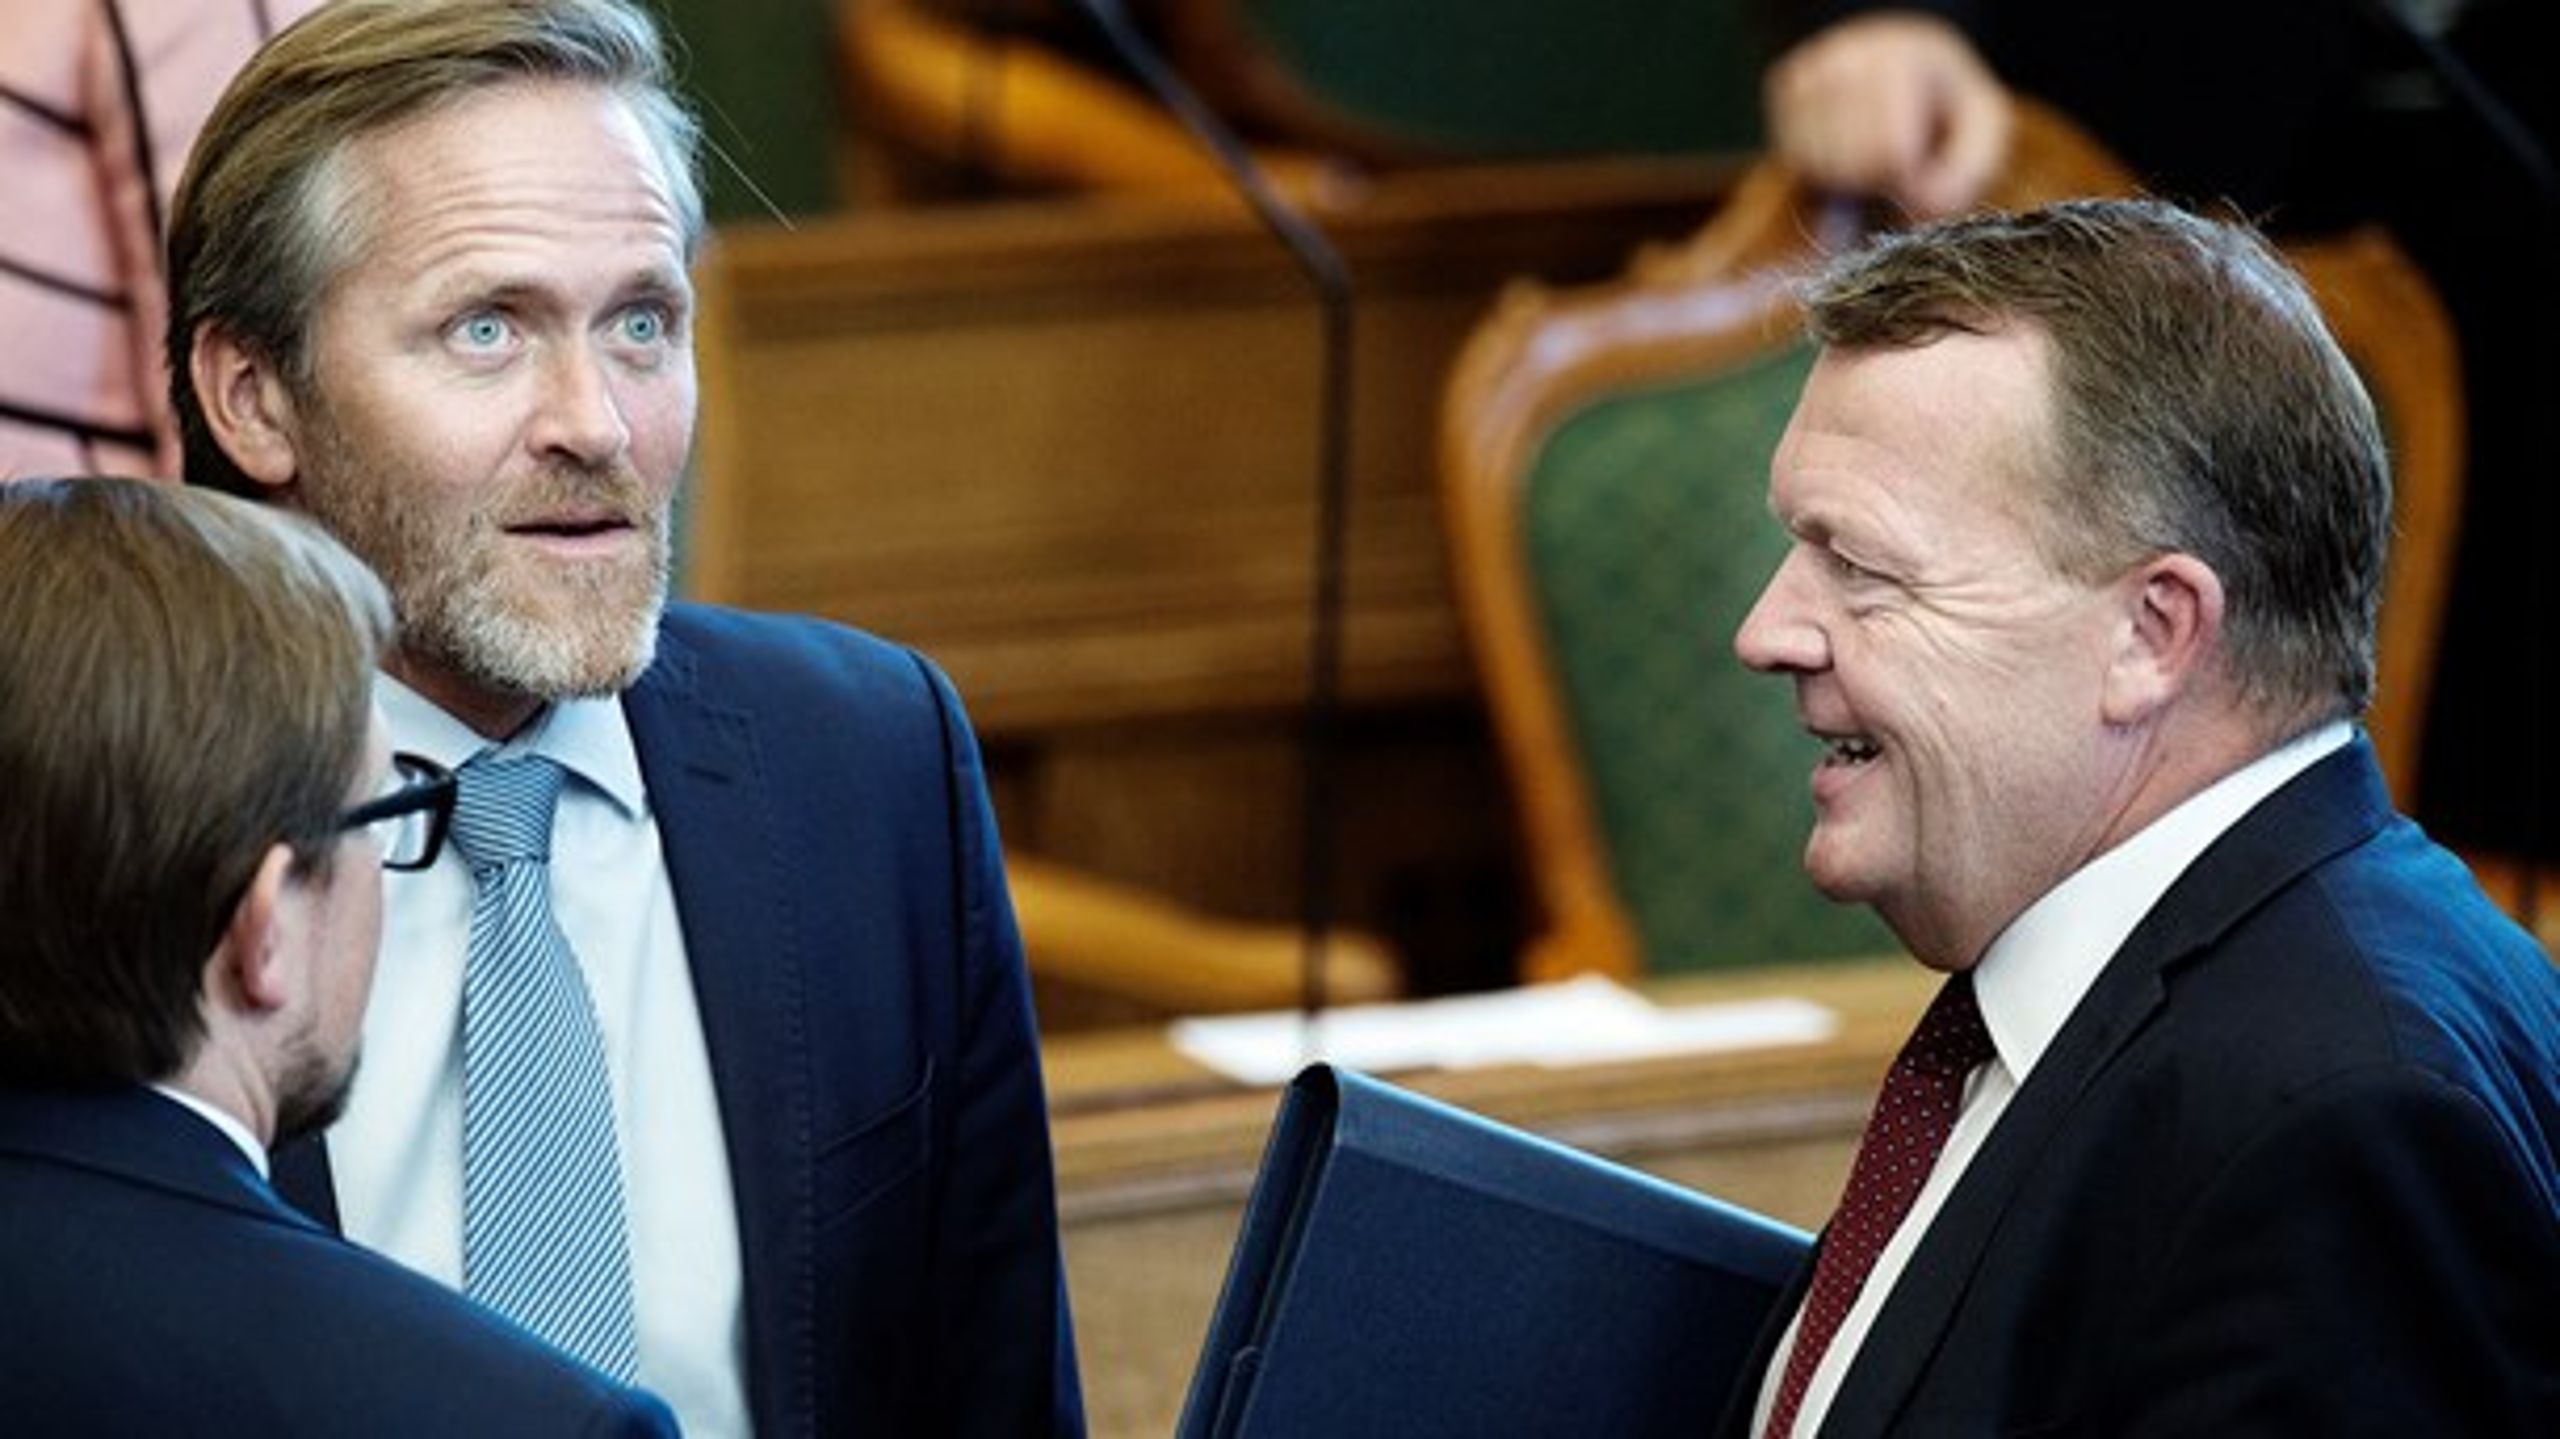 Statsminister Lars Løkke Rasmussen (V) i samtale med Anders Samuelsen og Simon Emil Ammitzbøll (LA) ved Folketingets åbning 2016.